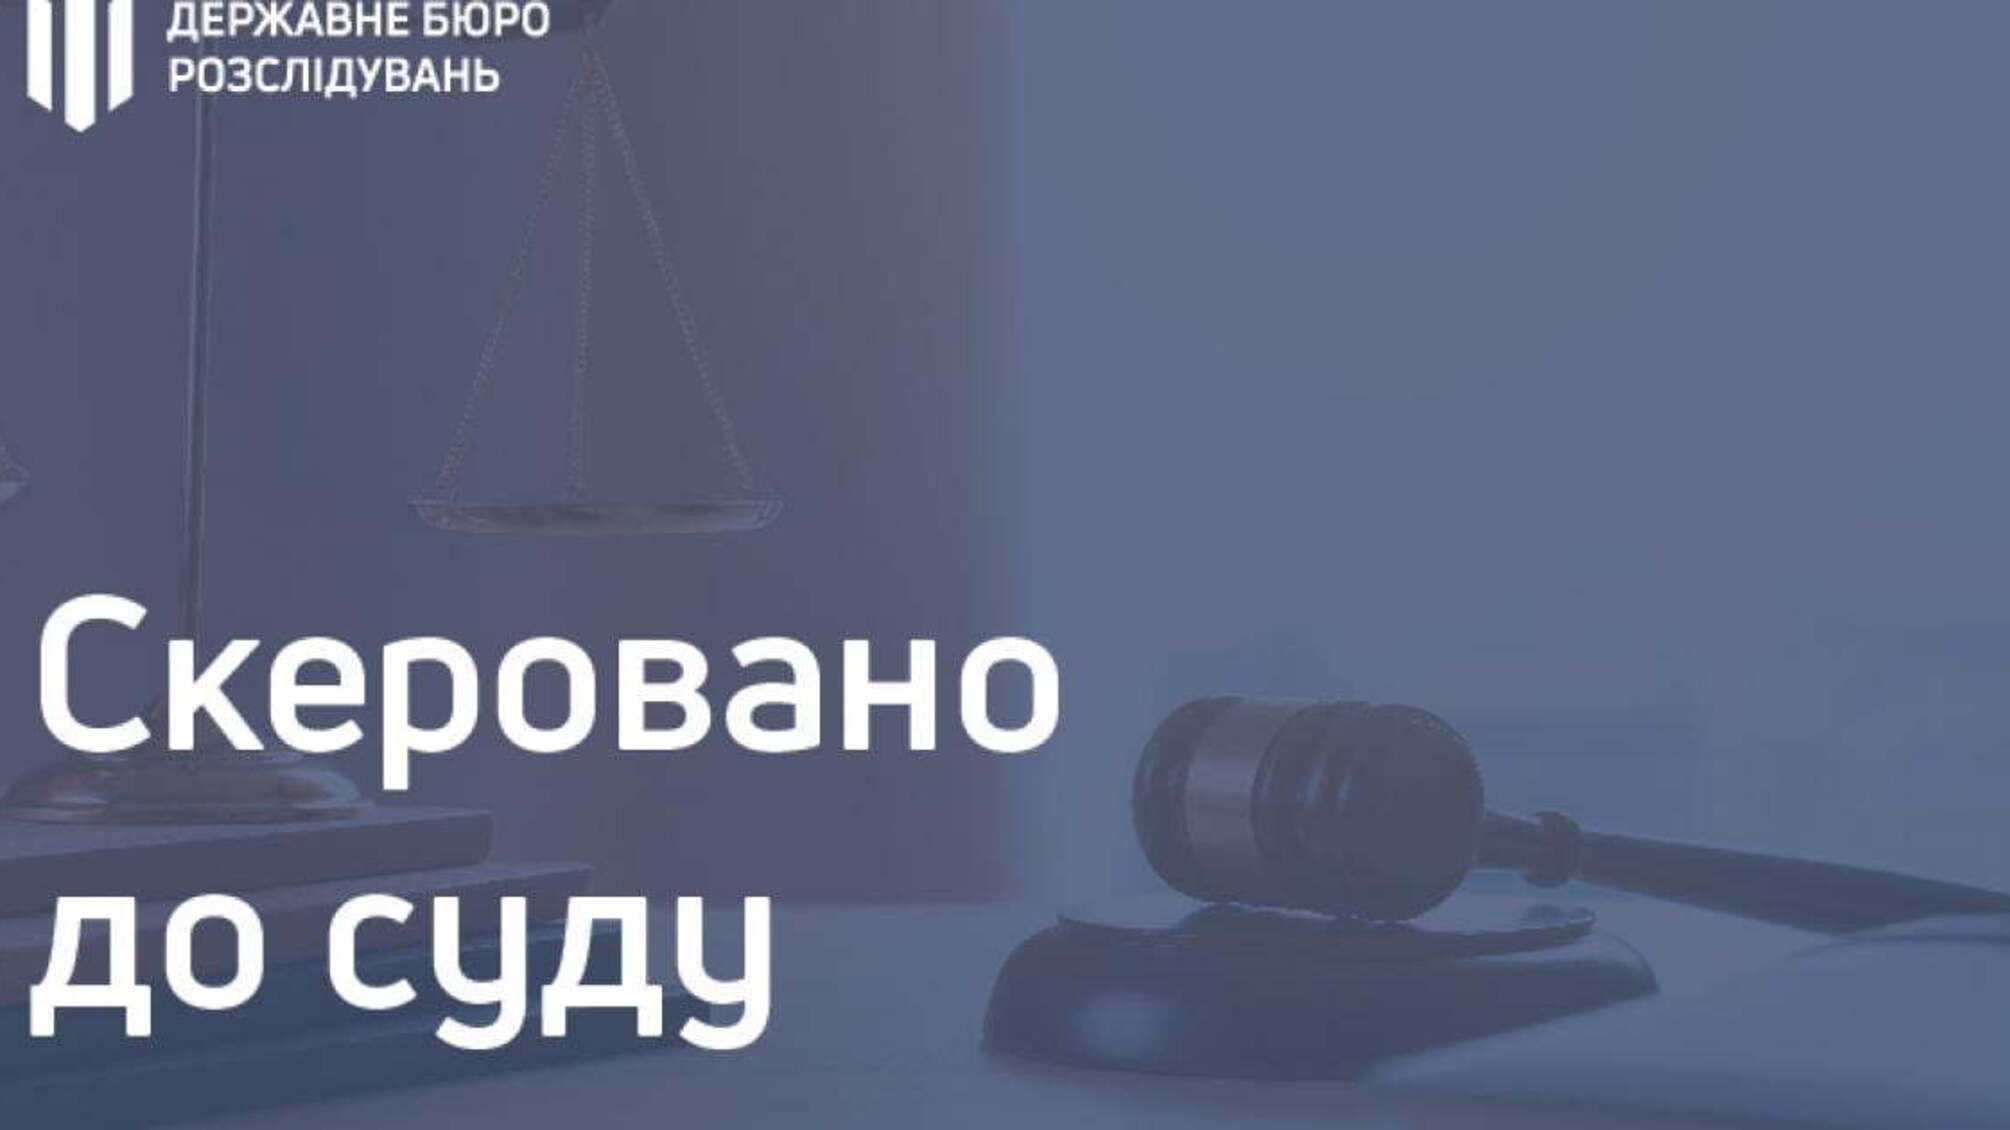  Розтрата бюджетних коштів на суму понад 700 000 гривень - посадовець  митниці постане перед судом  